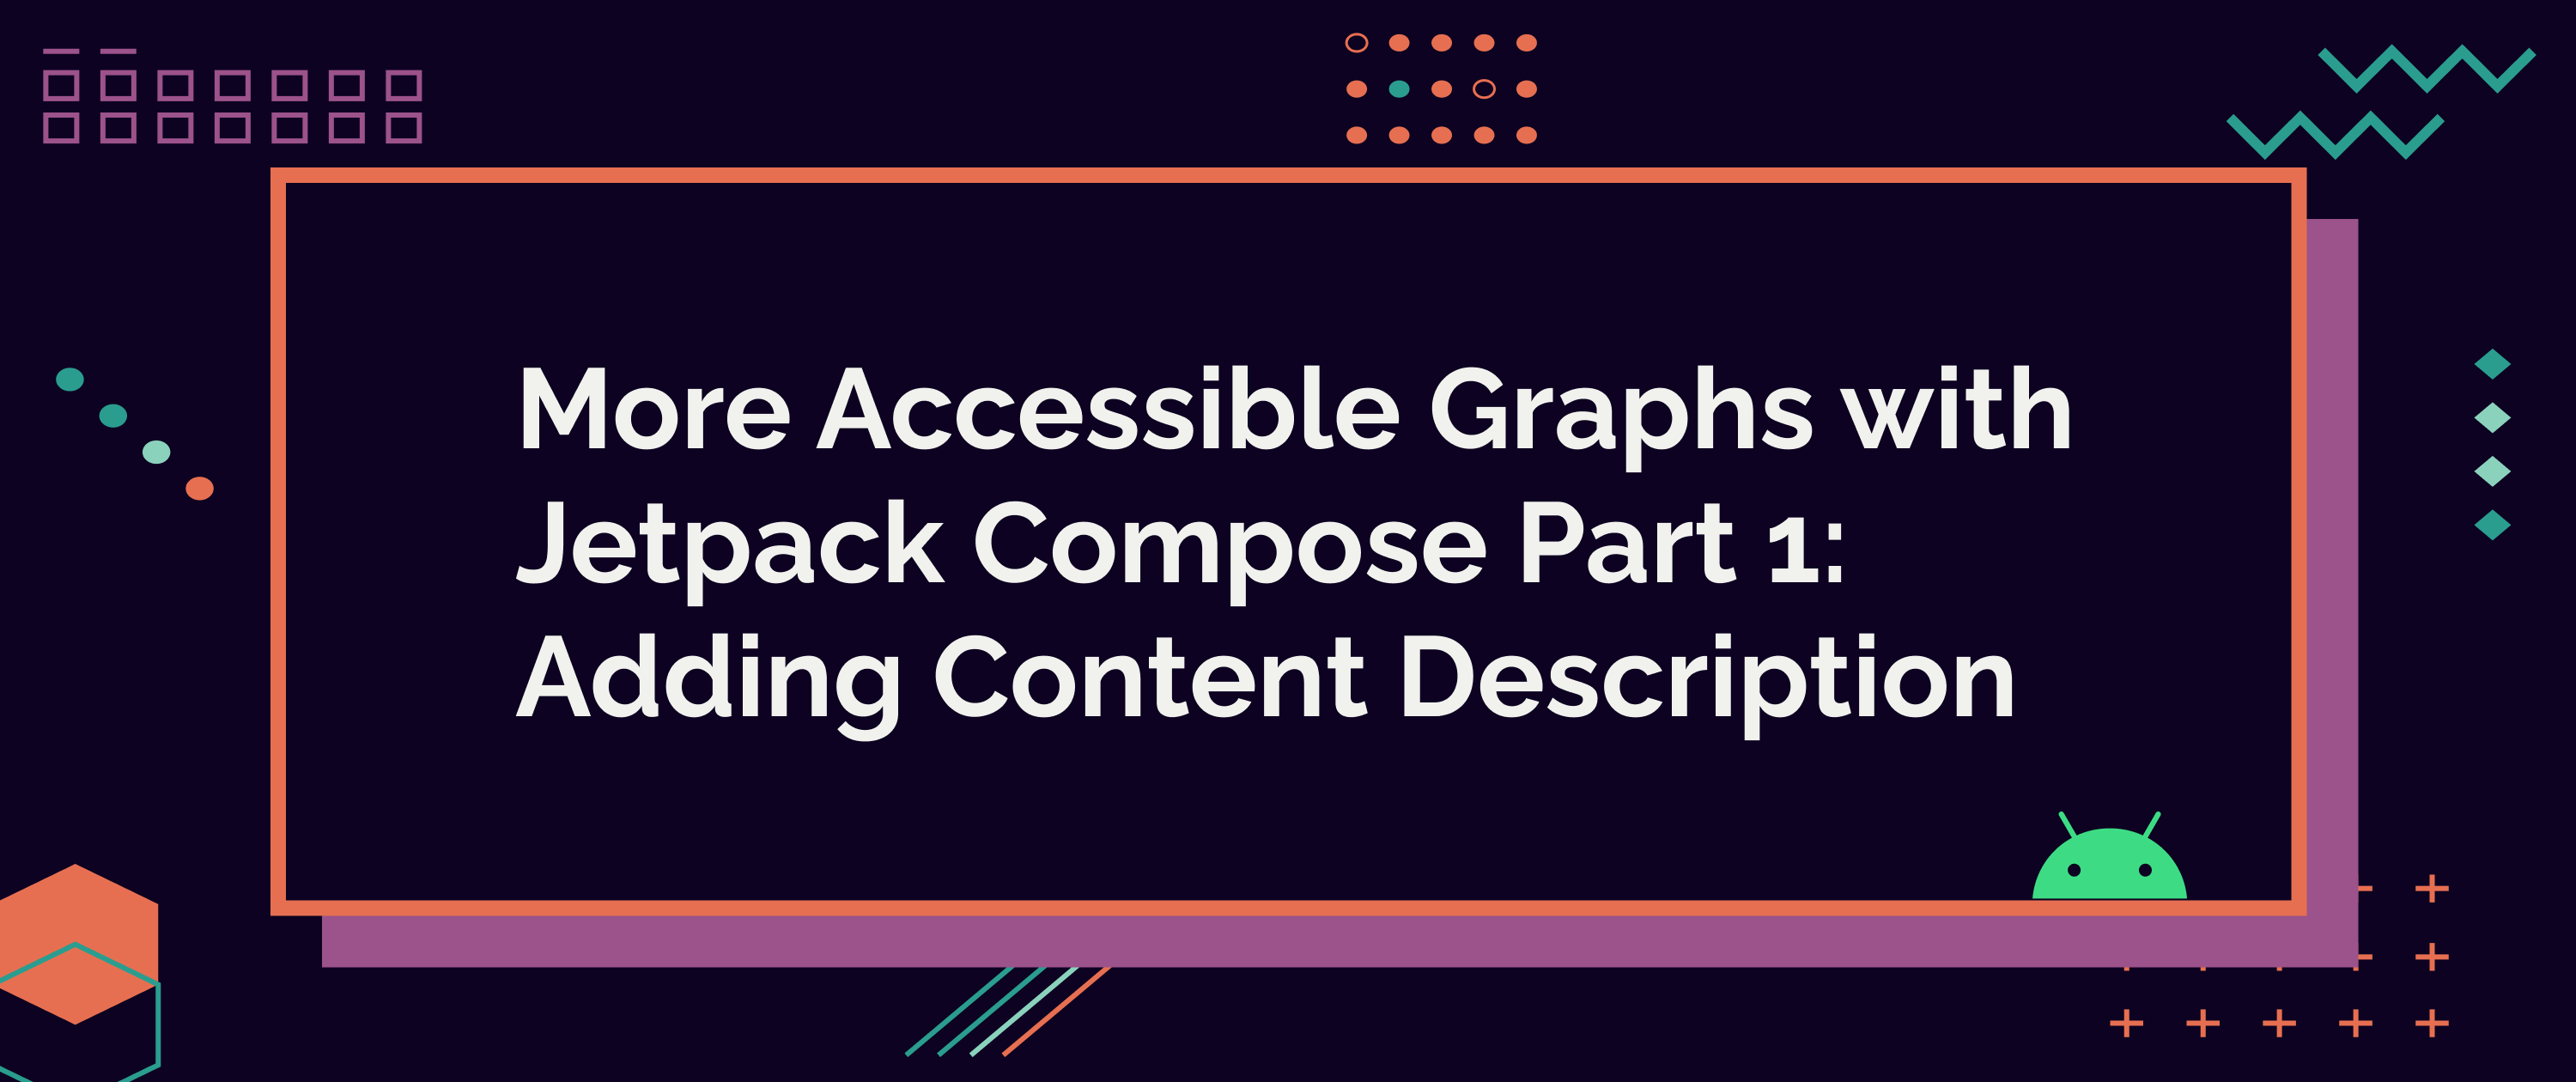 More Accessible Graphs with Jetpack Compose Part 1: Adding Content Description